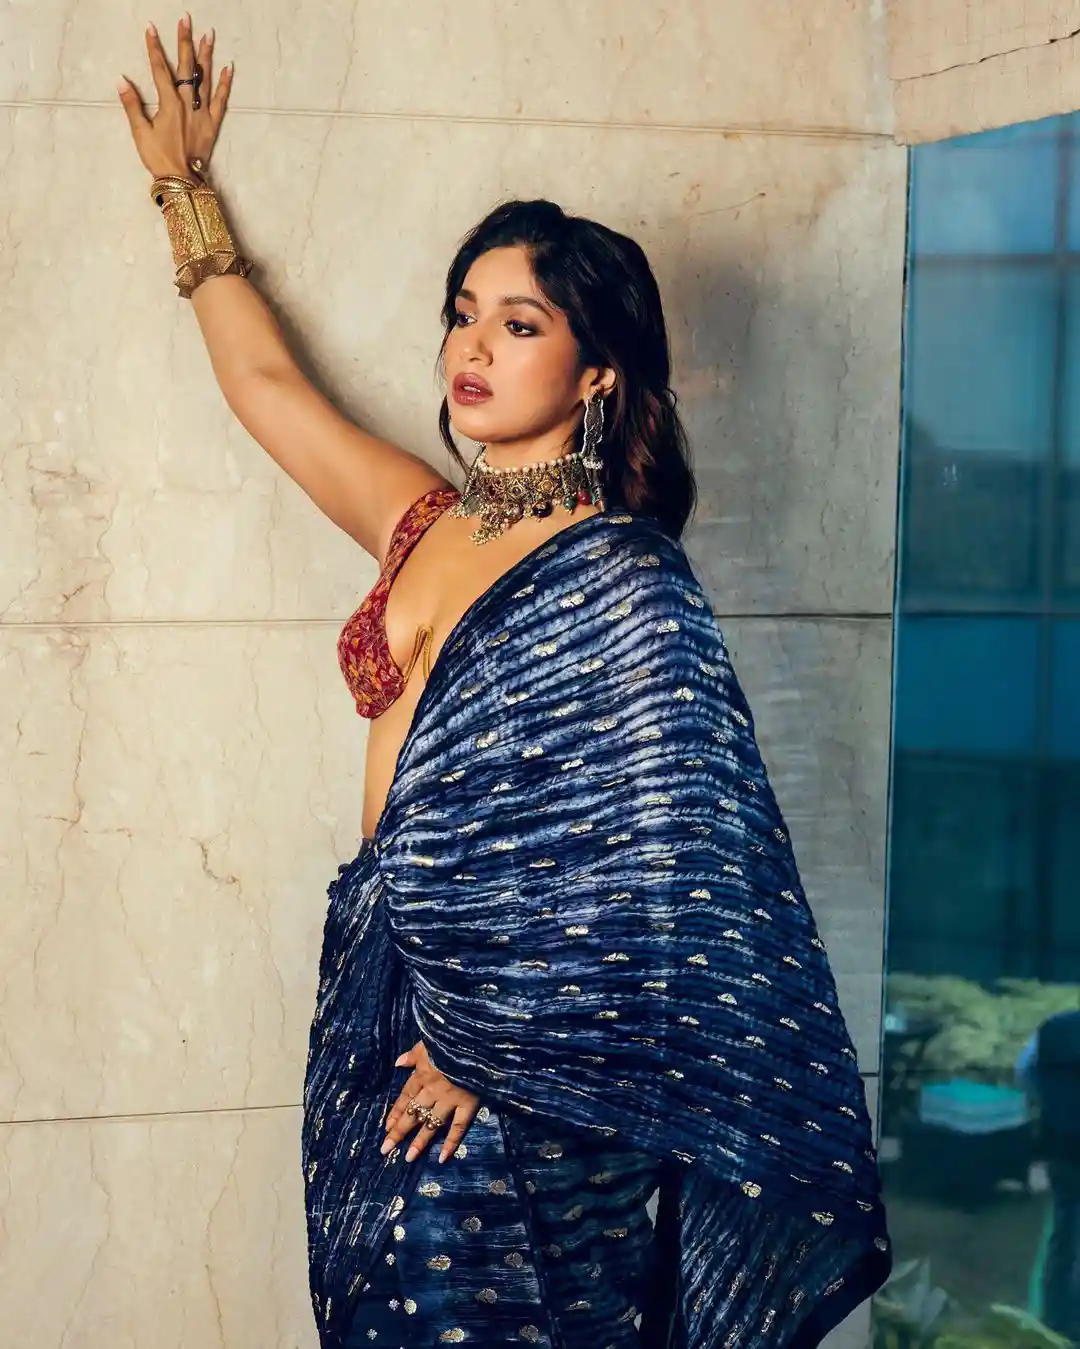 bhumi pednekar stunning looks in shining saree and blouse